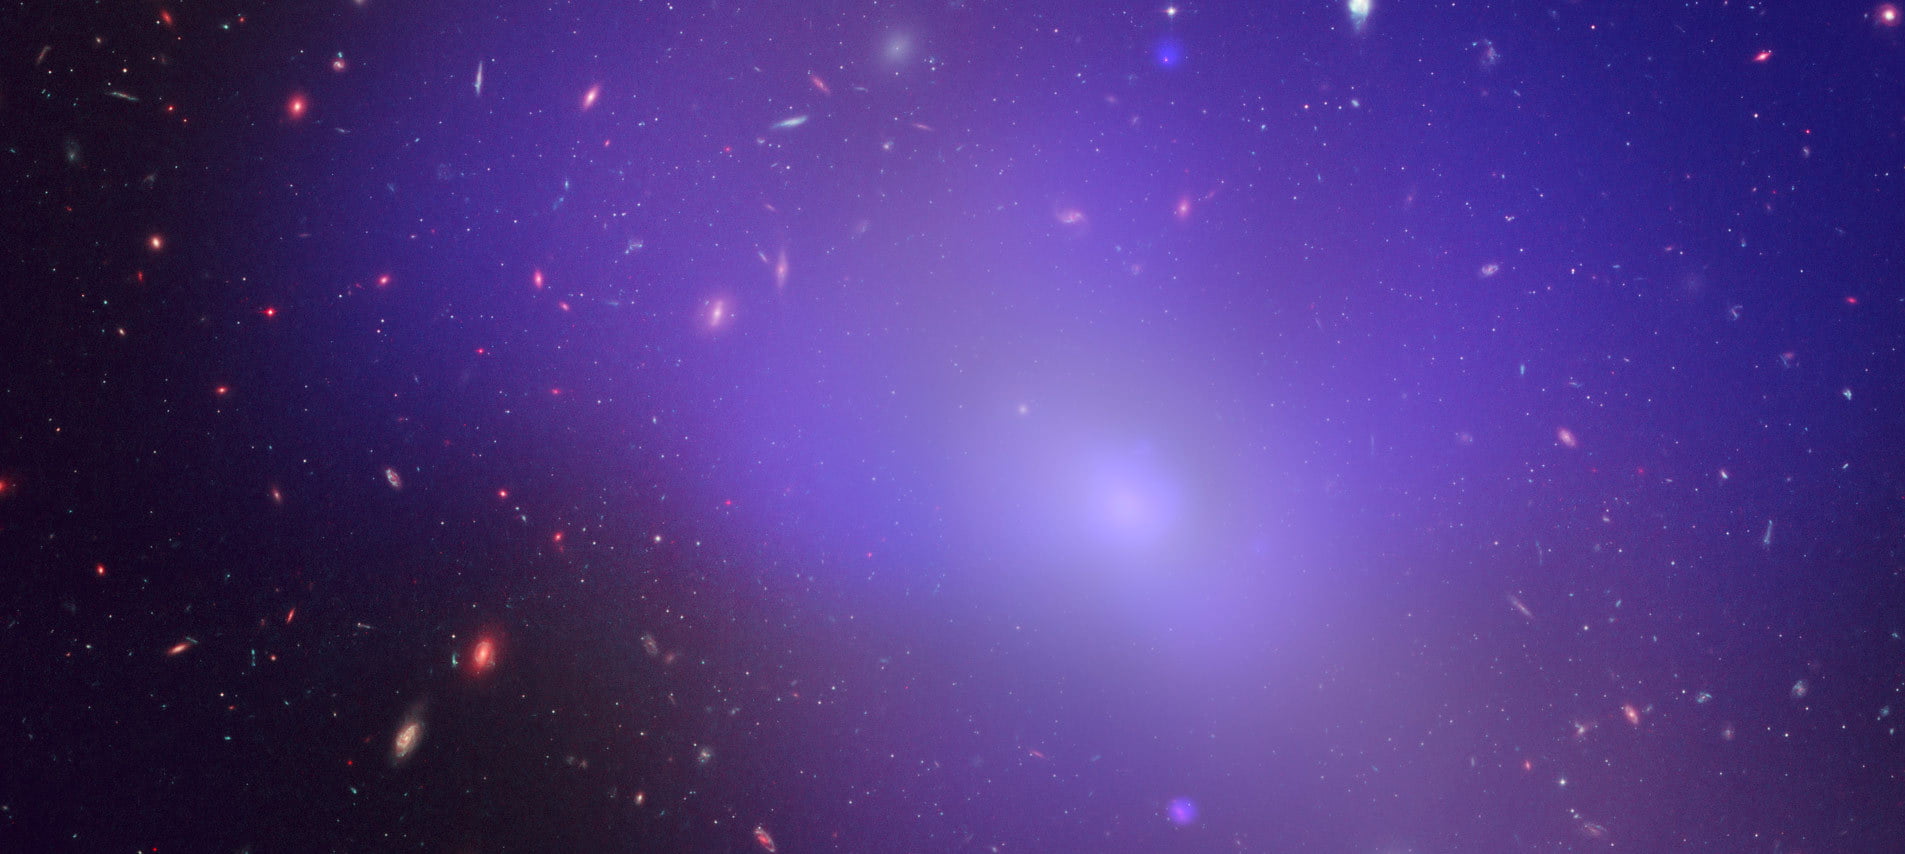 Black Holes Can Block The Formation Of New Stars E1414839364811 مجلة نقطة العلمية